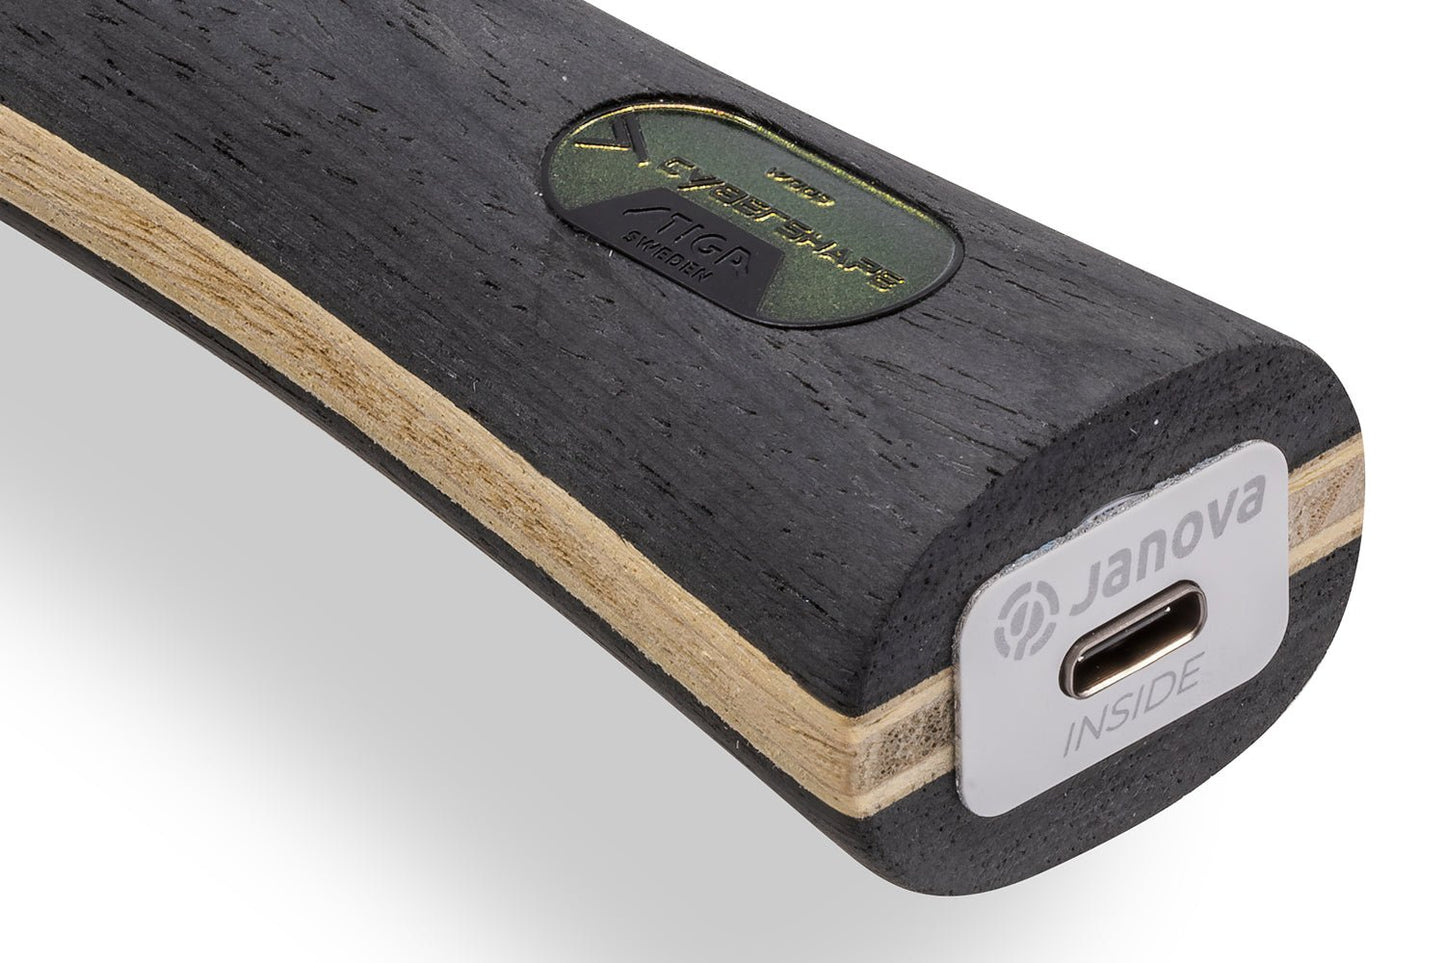 Stiga Cybershape Wood Tischtennisschläger, Detailansicht konkaves Griffende mit Janova Sensor und USB-C